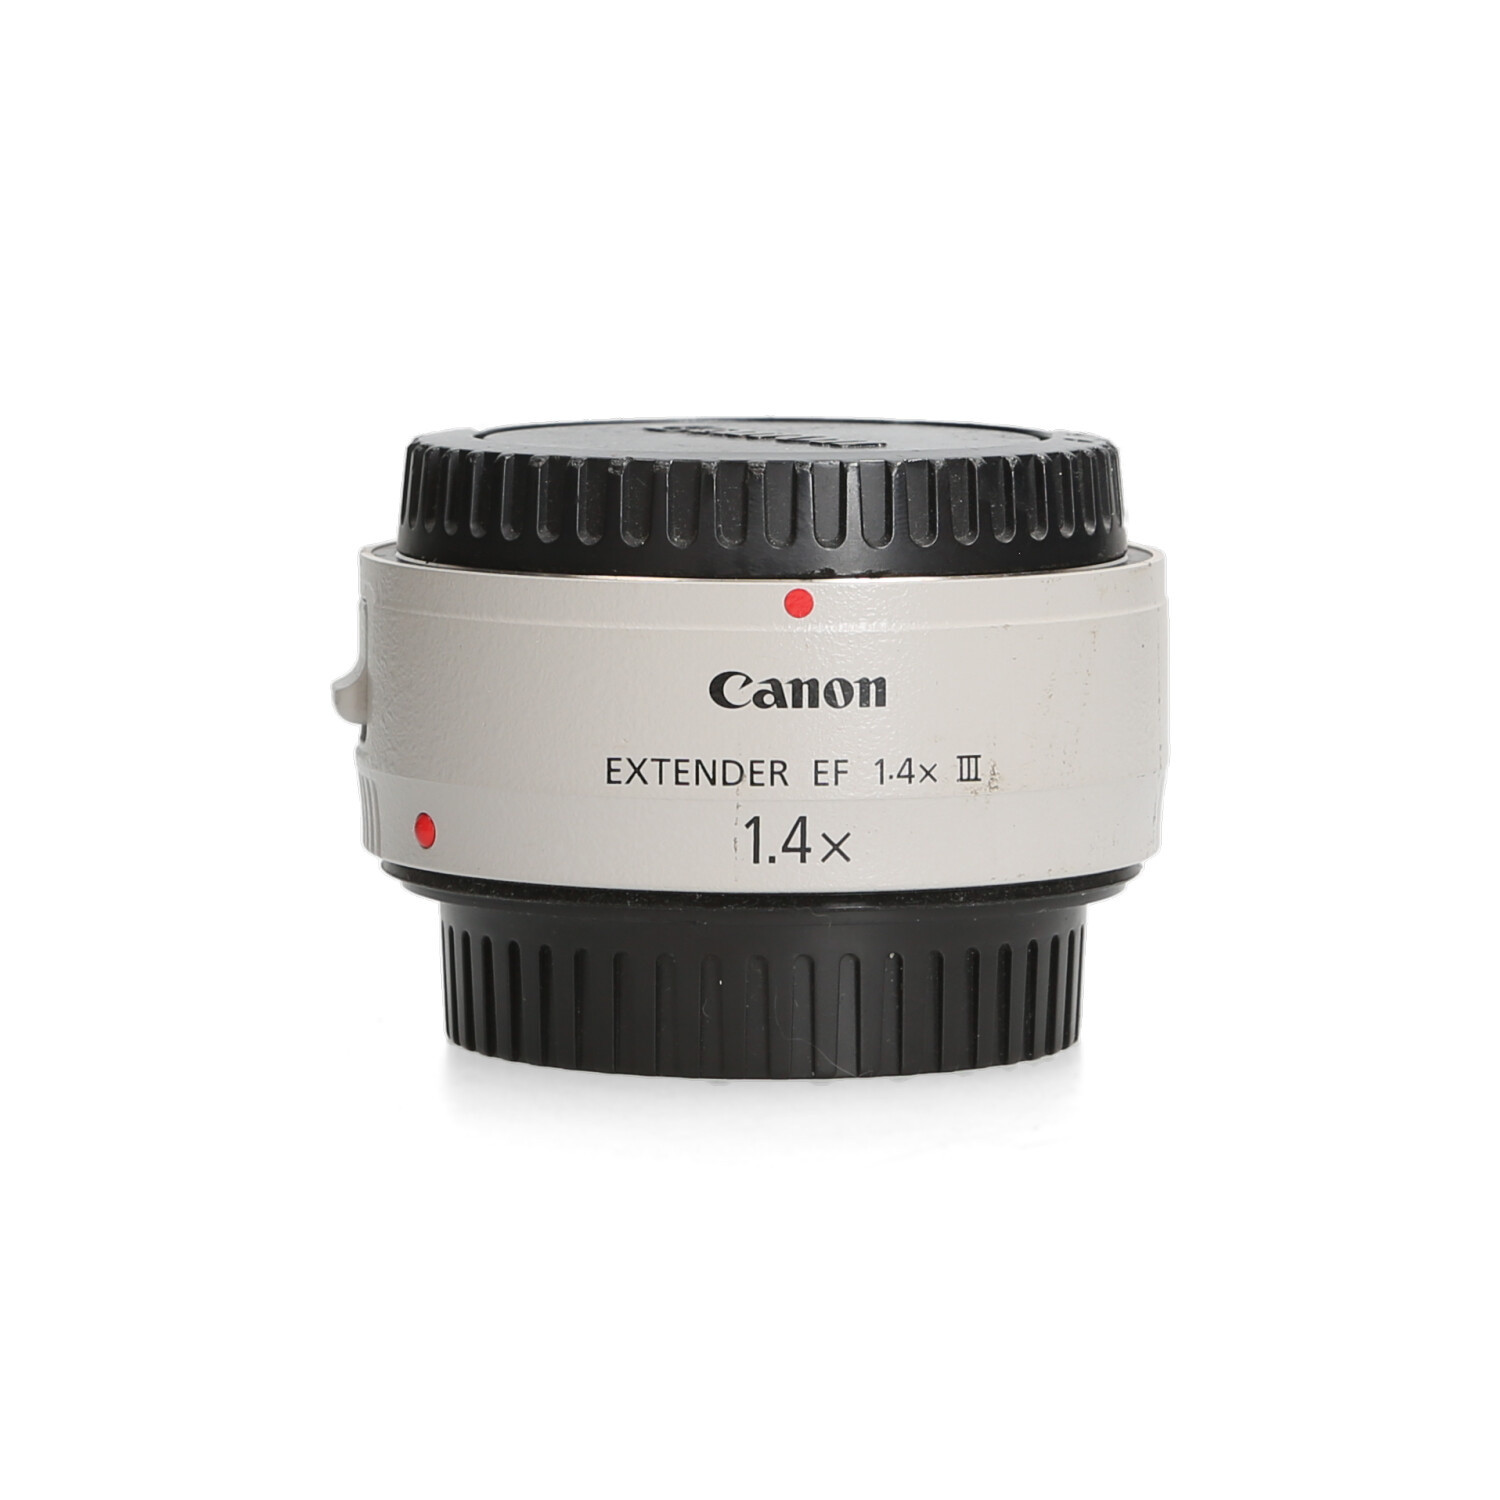 Canon Canon extender 1.4 III